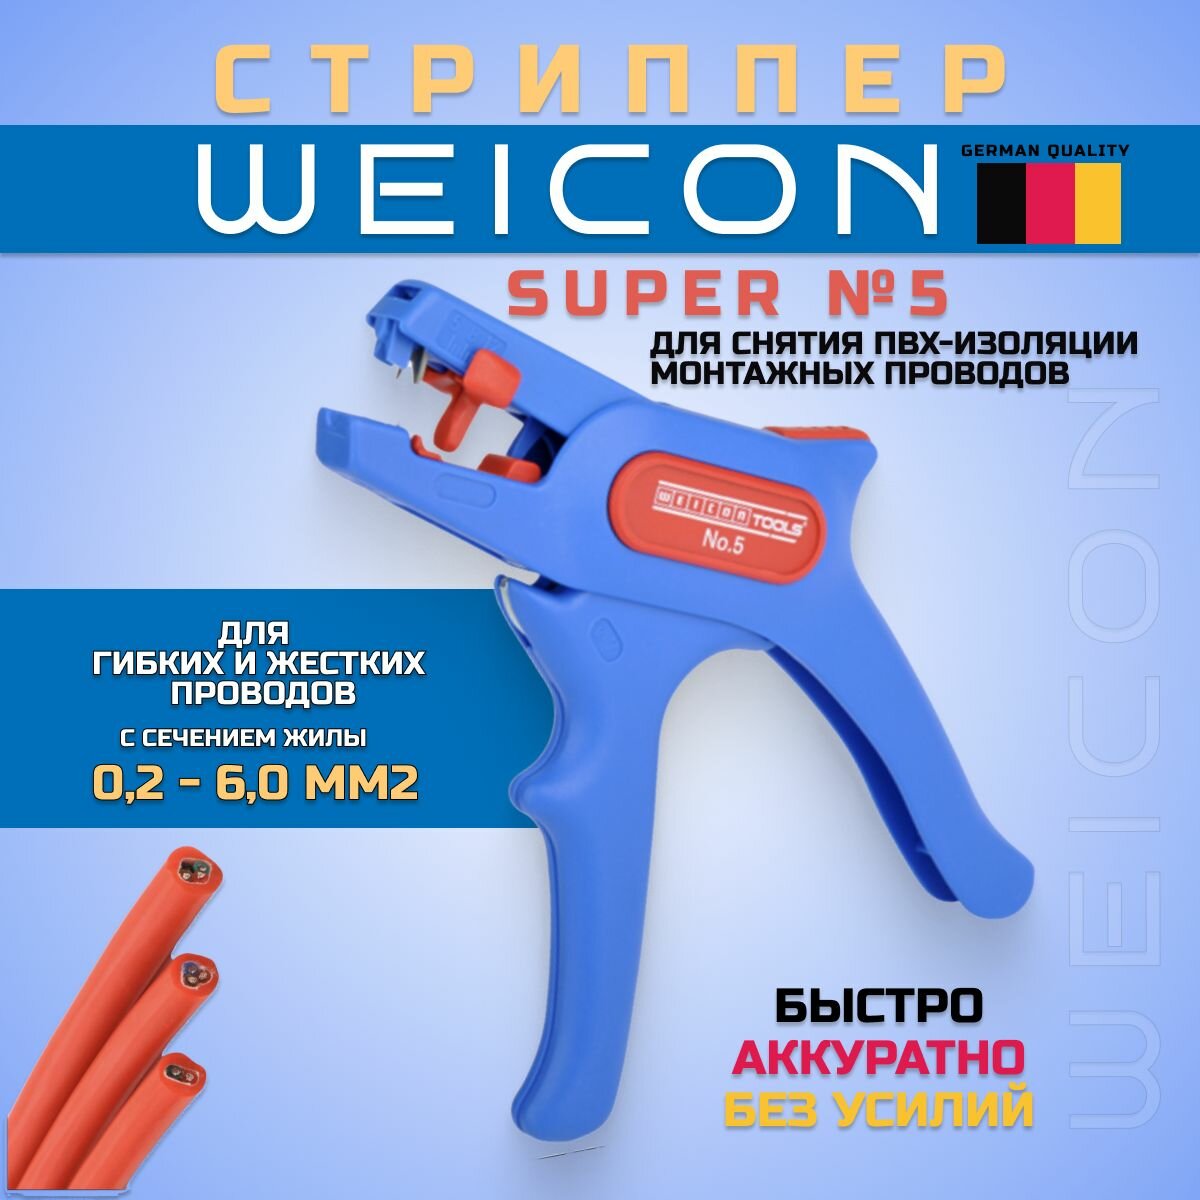 Инструмент для снятия изоляции и зачистки проводов, автоматический стриппер, Super №5 WEICON (51000005) Германия